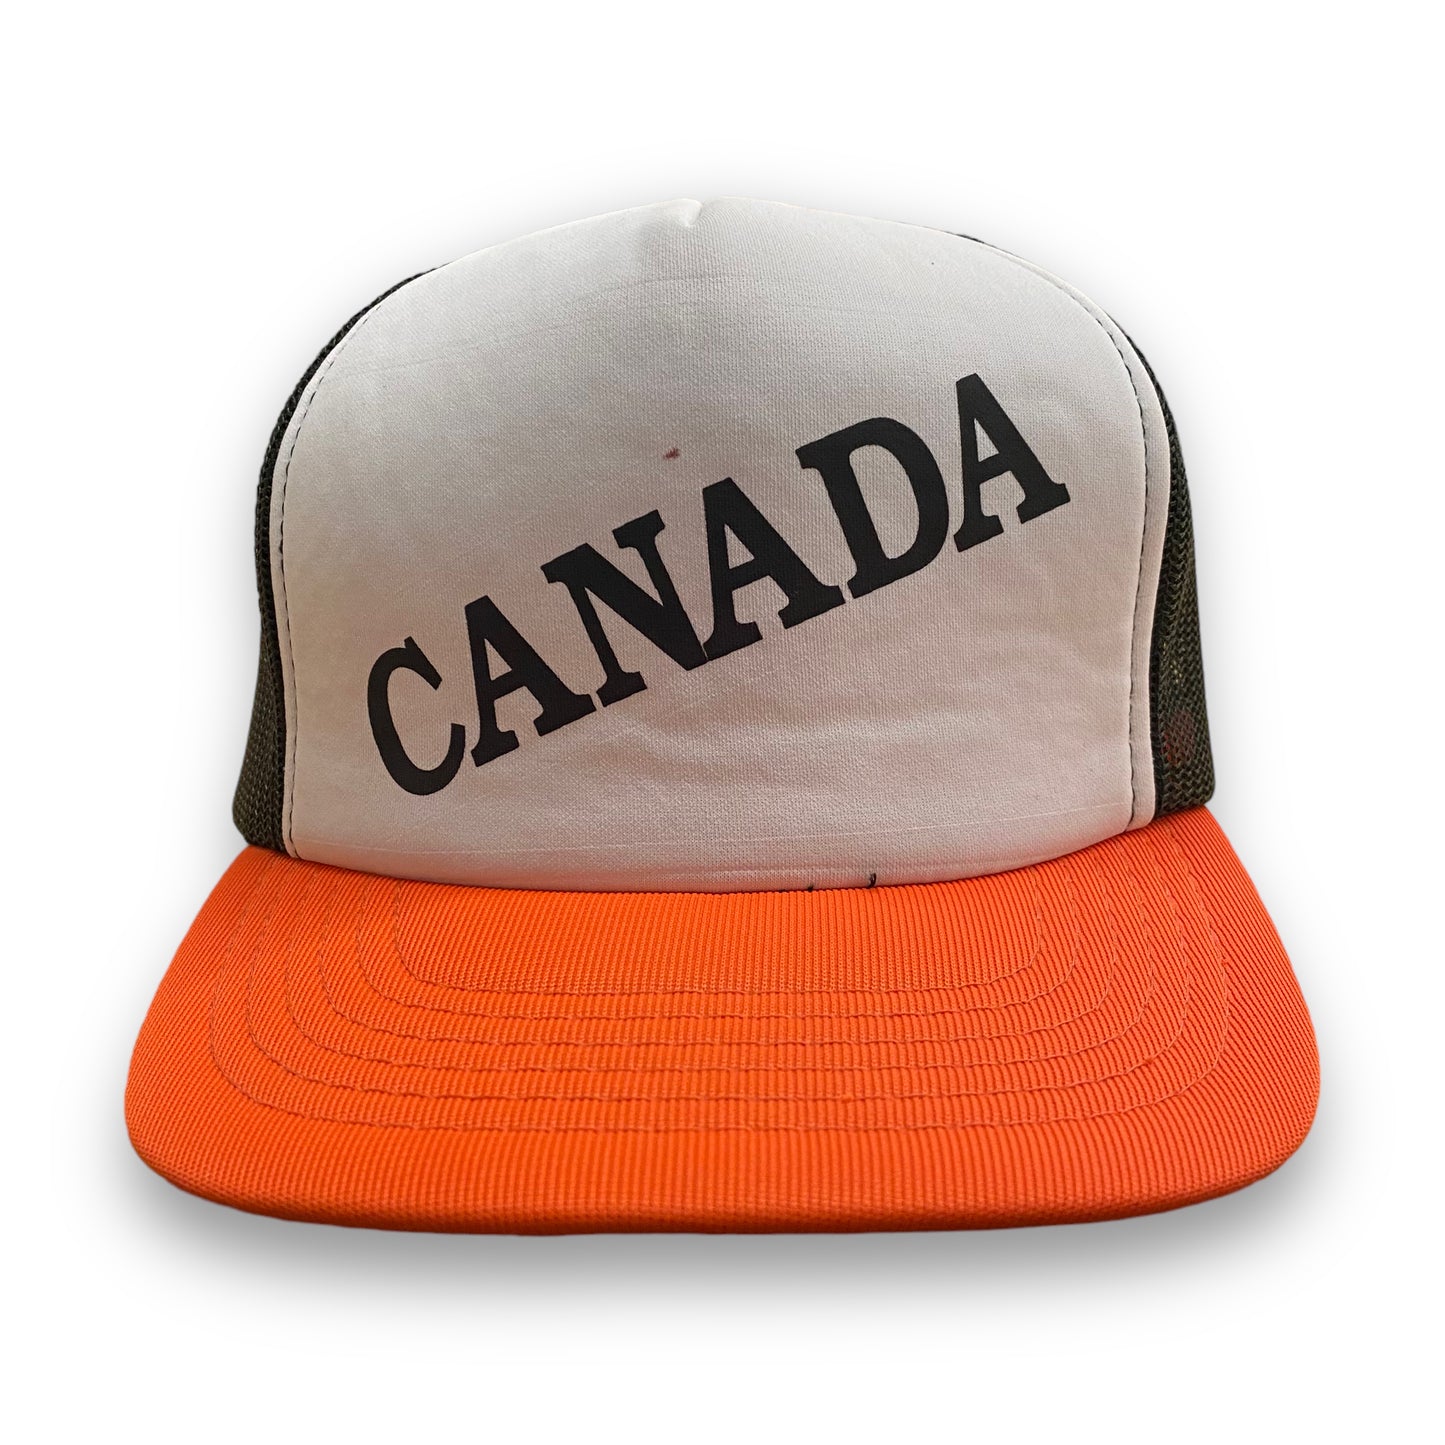 1980s "Canada" Mesh Trucker Hat